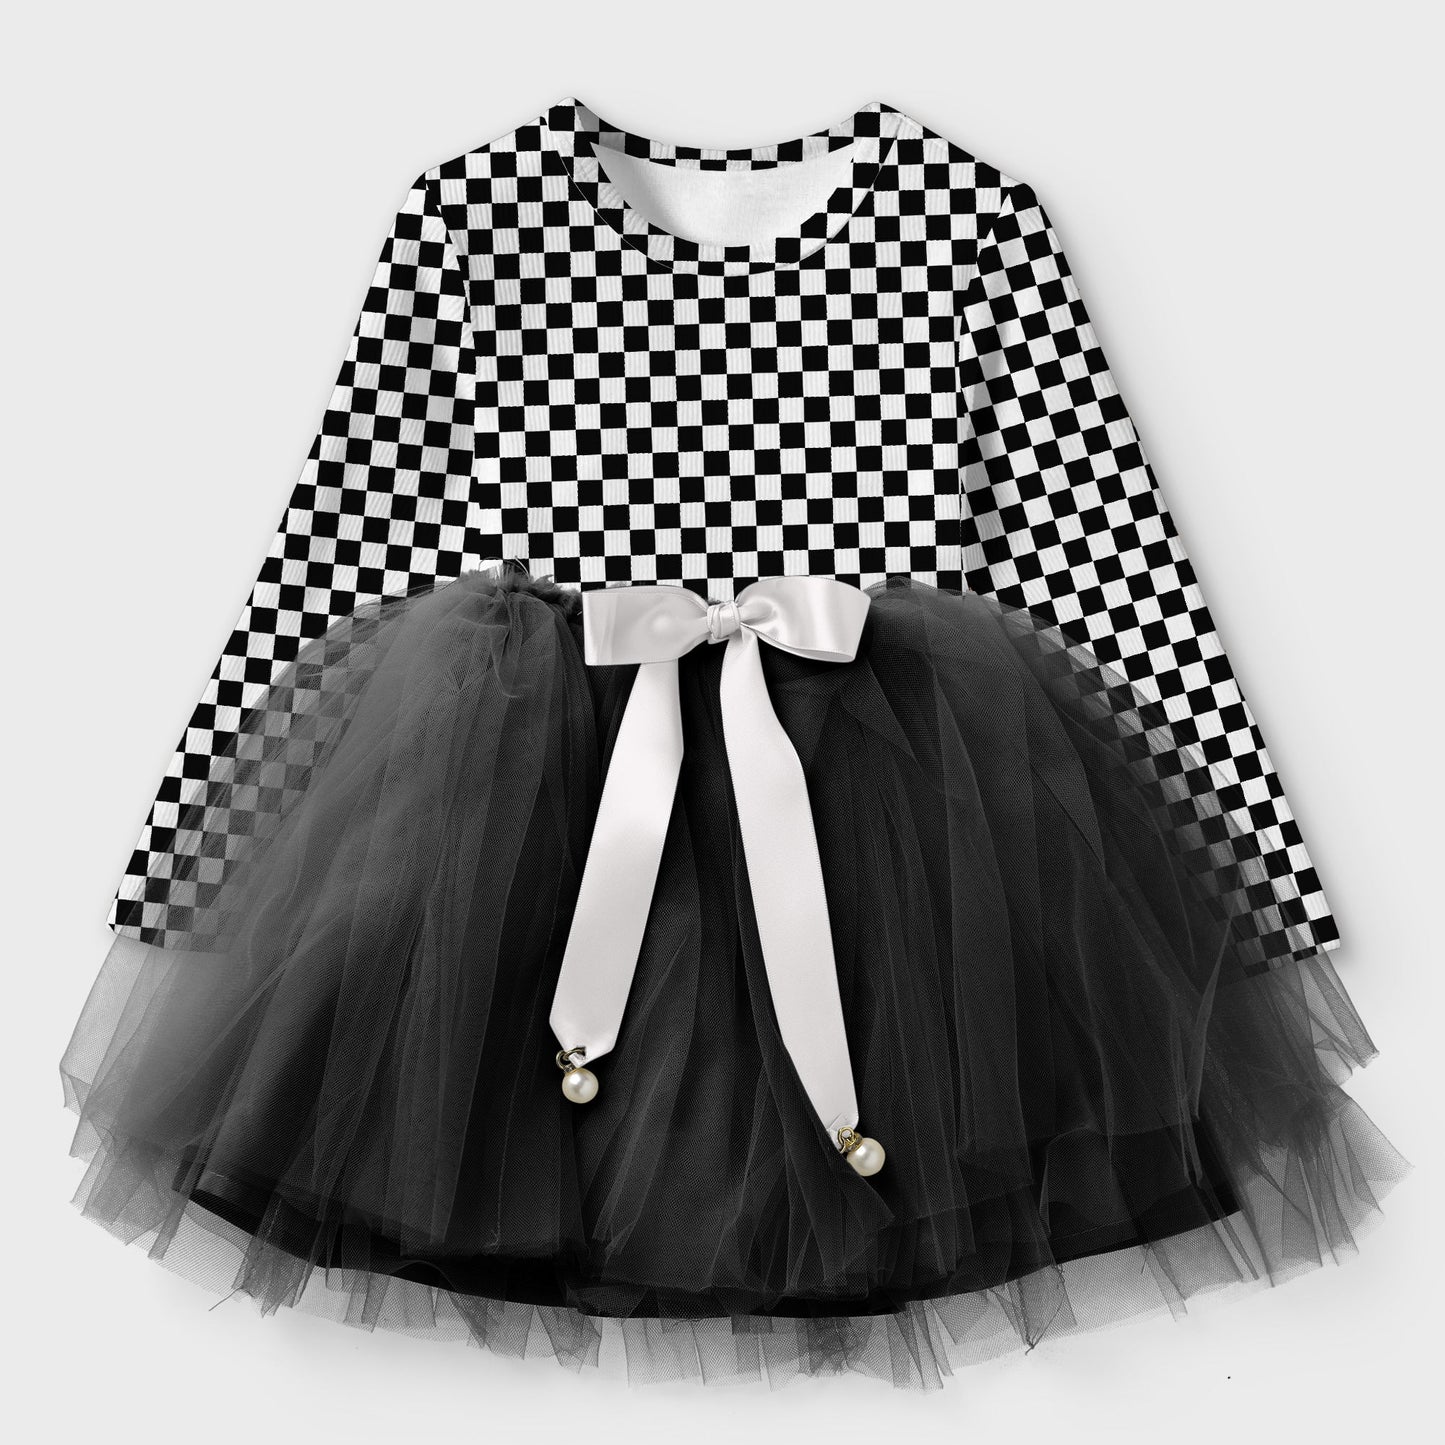 Girl & Toddler Chess Plaid Design Net Frock Dress  (Winter Stuff)